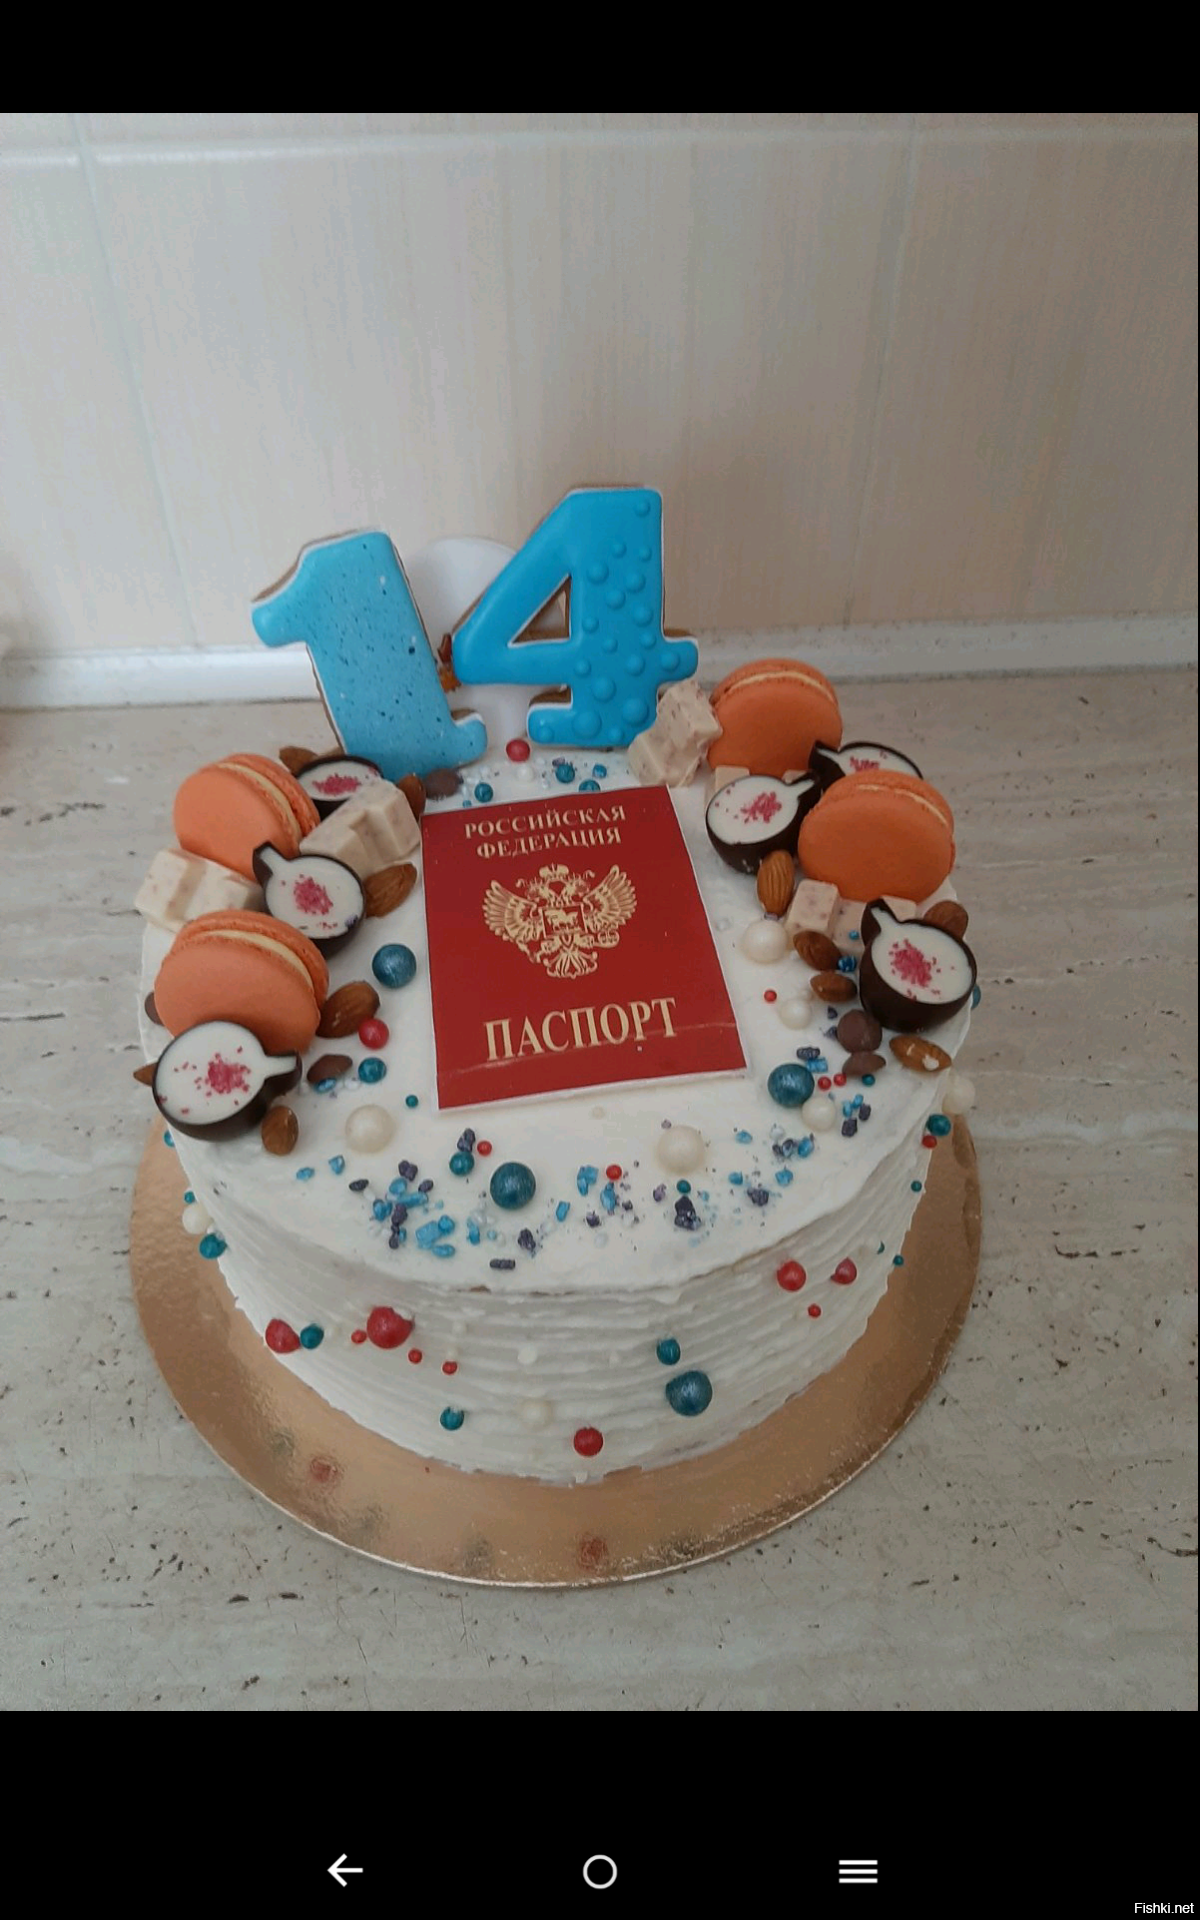 А у моей дочки сегодня день рождения, жена вот такой тортик сделала